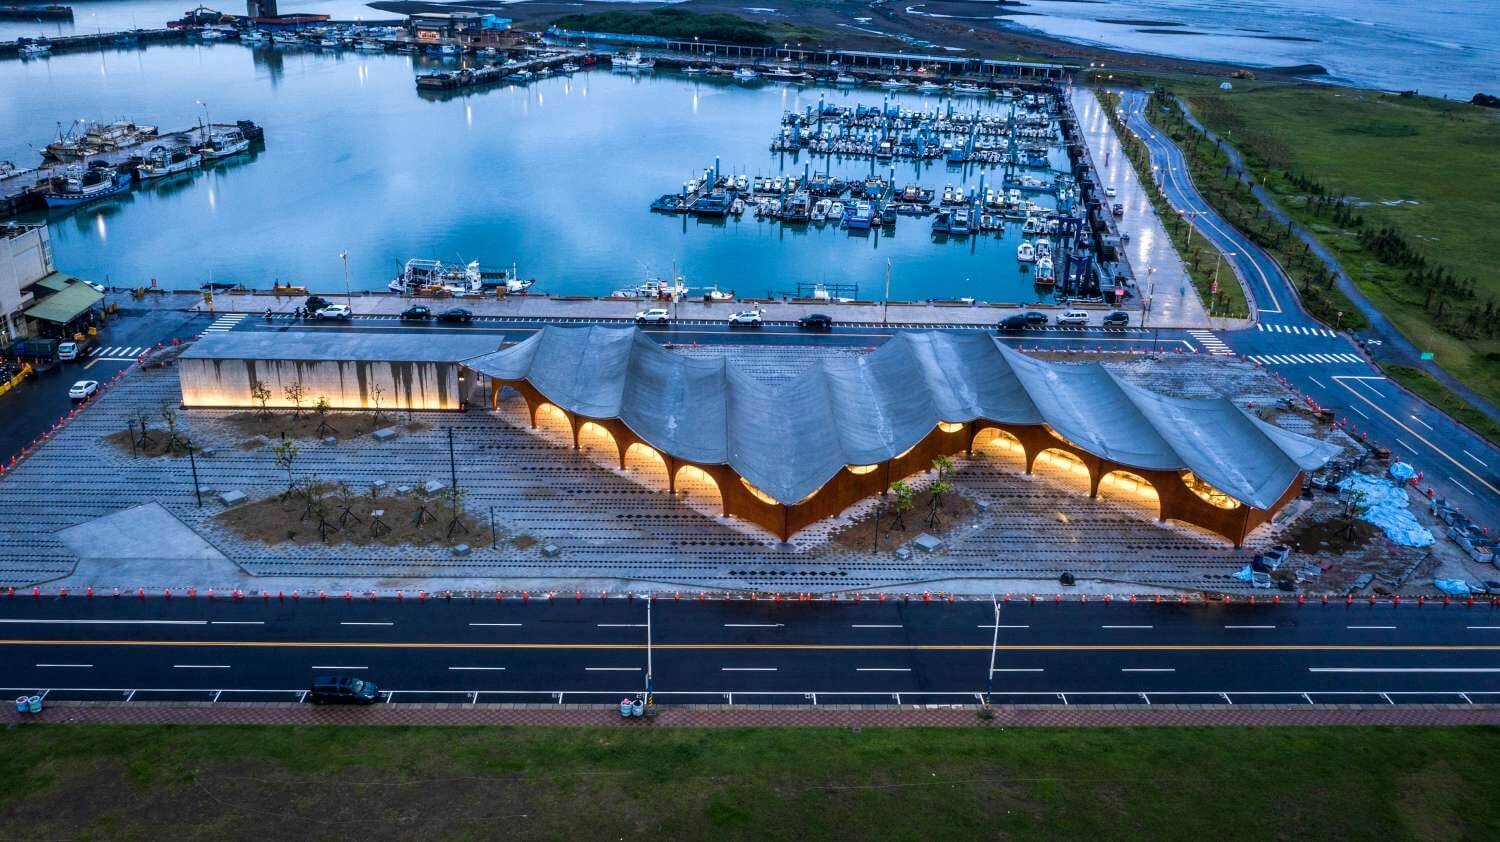 林聖峰、蘇富源聯手設計新竹漁港漁產直銷中心2022年底完工 延續波光市集設計打造臨海雙波浪購物區